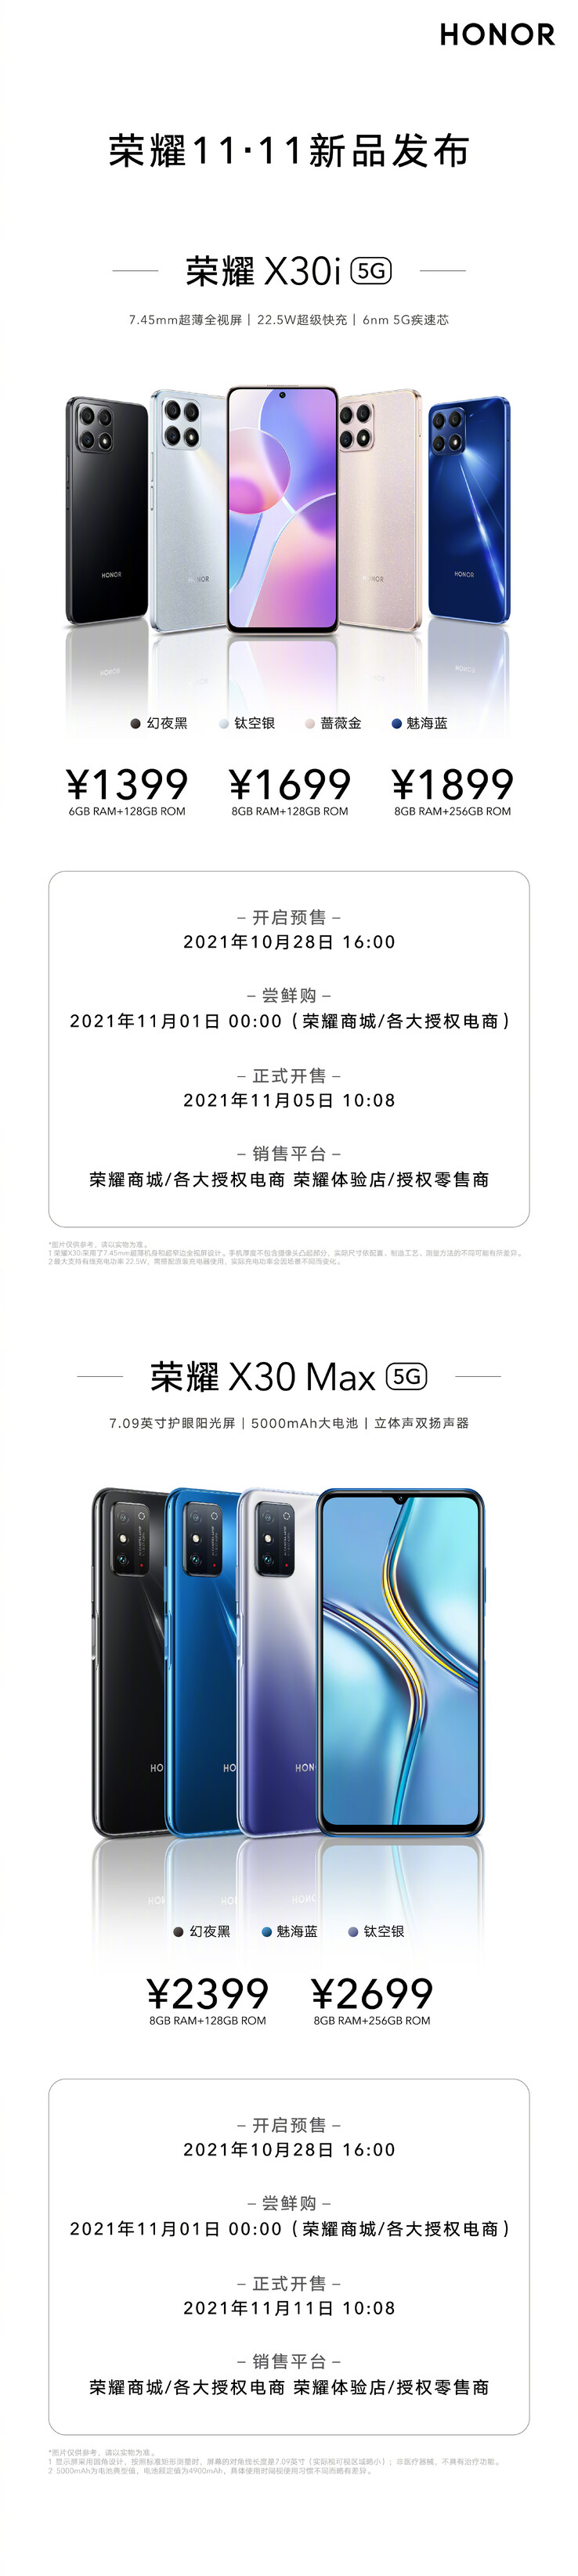 Honor presenta el X30i y el X30 Max con 3 colores cada uno. (Fuente: Honor vía Weibo)